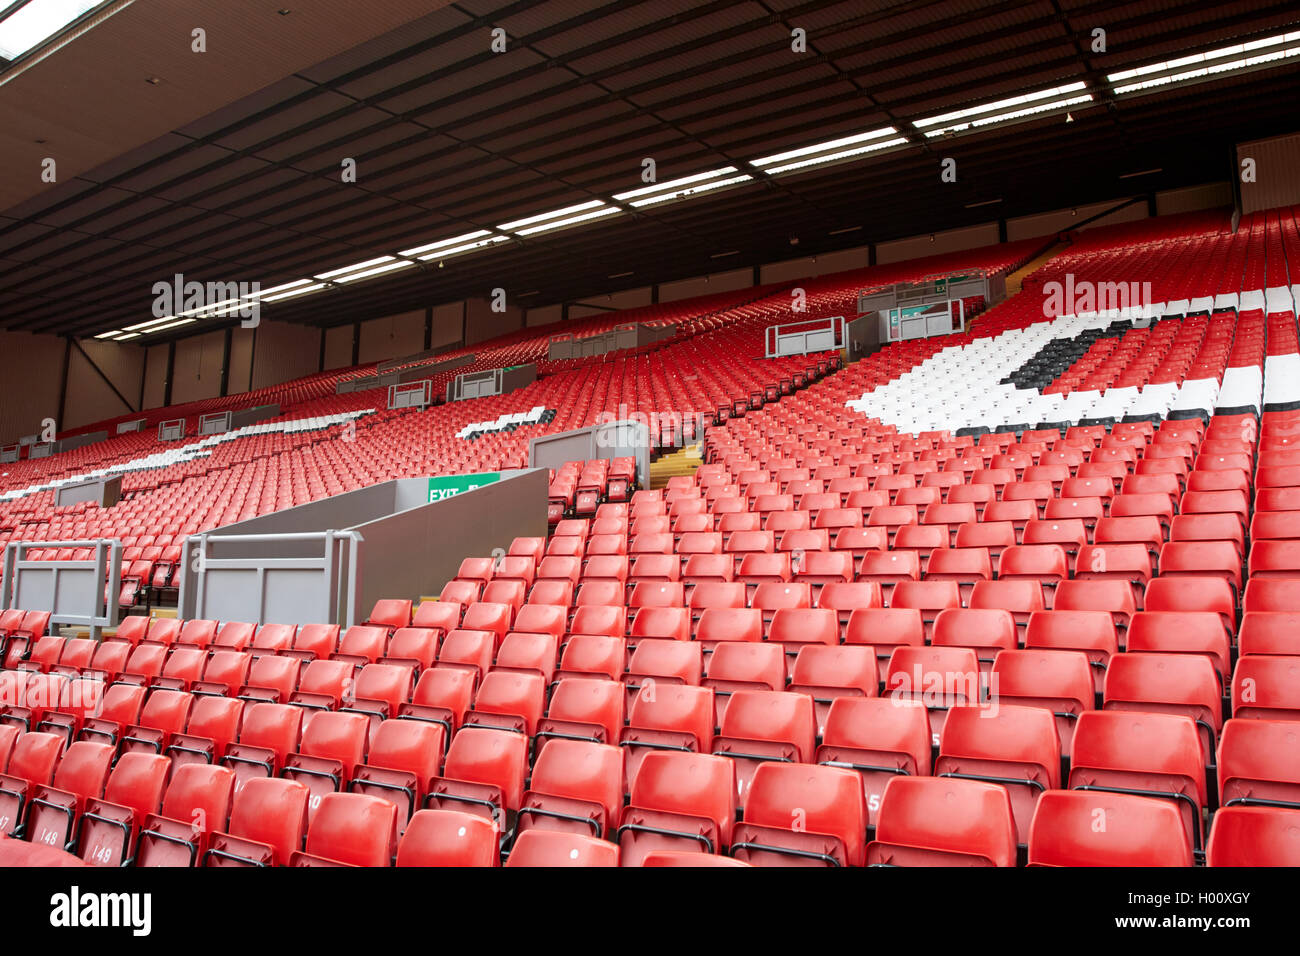 Sitzgelegenheiten Auf Der Kop Liverpool Anfield Stadion Des Fc Liverpool Merseyside Uk Stockfotografie Alamy